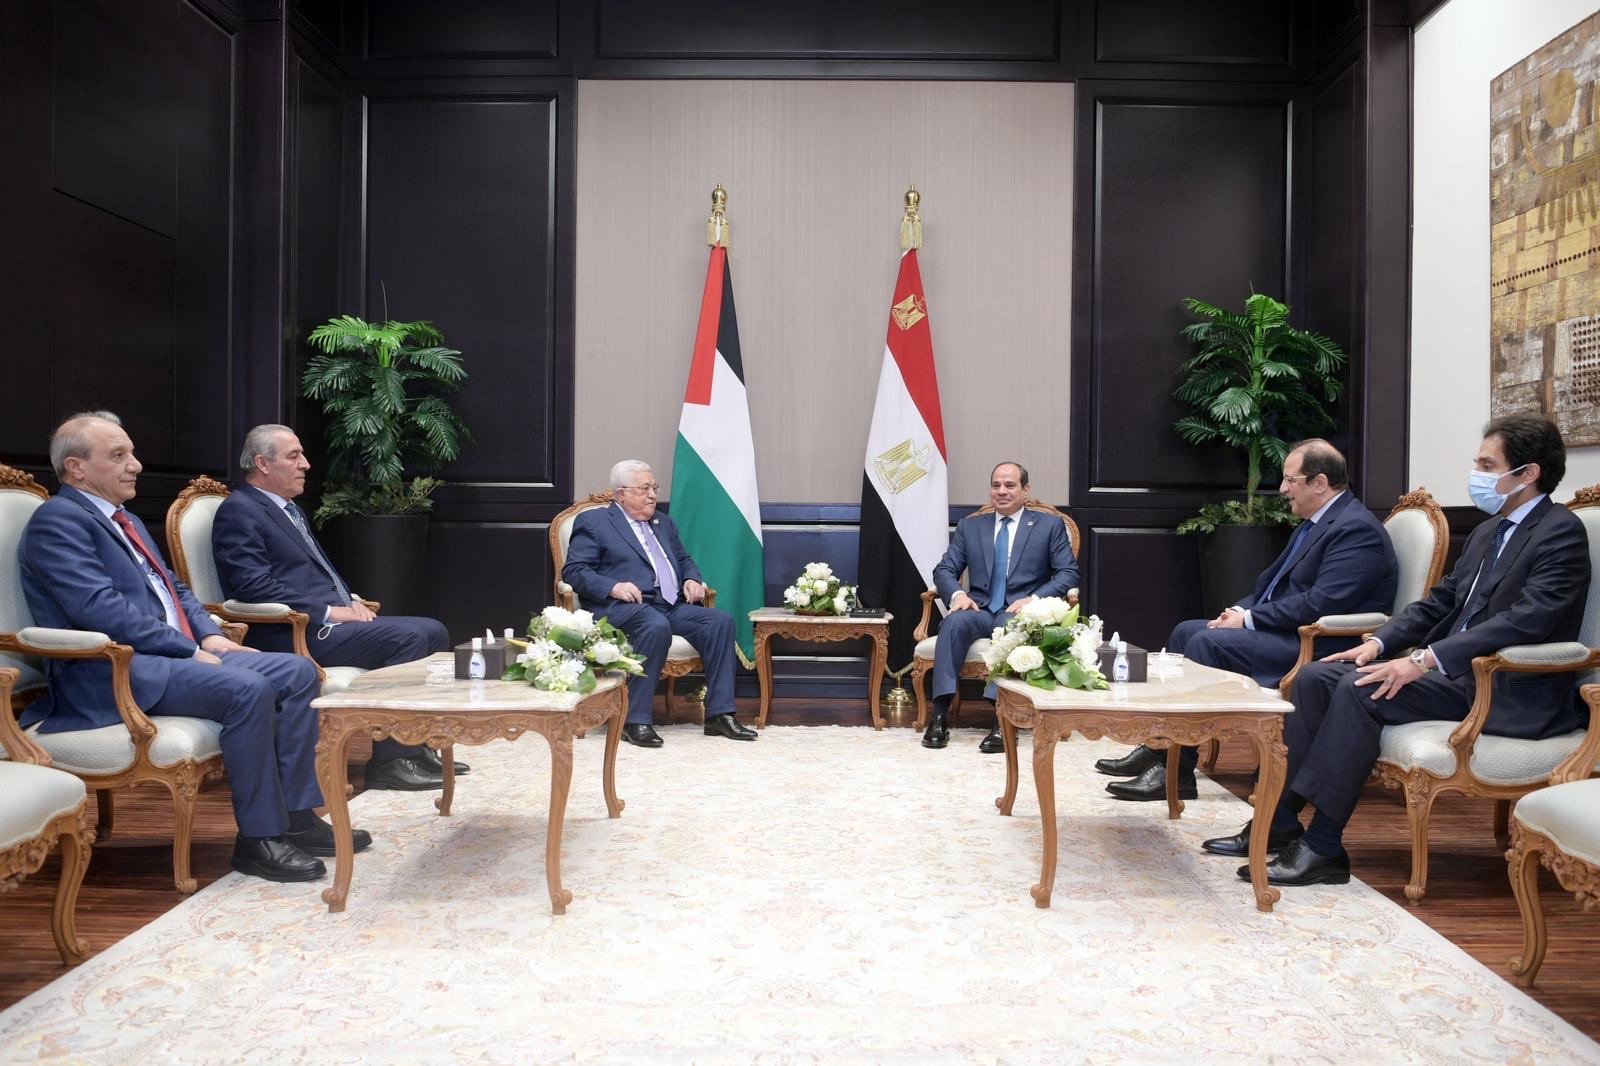 صور من لقاء الرئيس الفلسطيني محمود عباس (أبومازن) مع مع رئيس جمهورية مصر العربية عبد الفتاح السيسي 2